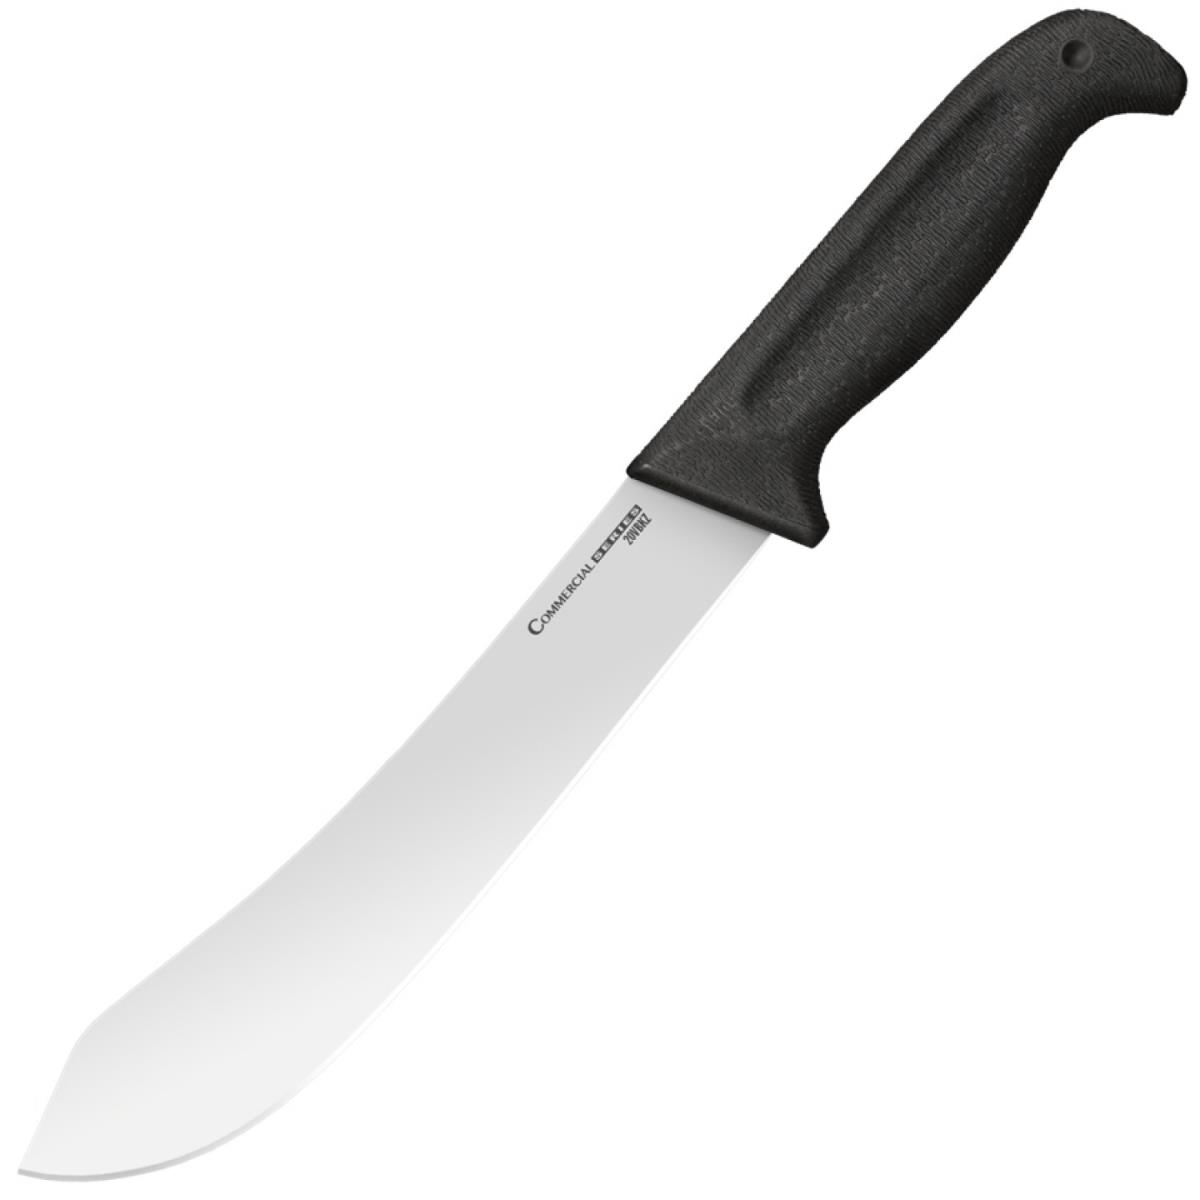 Нож 20VBKZ Butcher Knife мясника фикс., рук-ть Kray-Ex черн, клинок German 4116 20см Cold Steel нож мясника cs